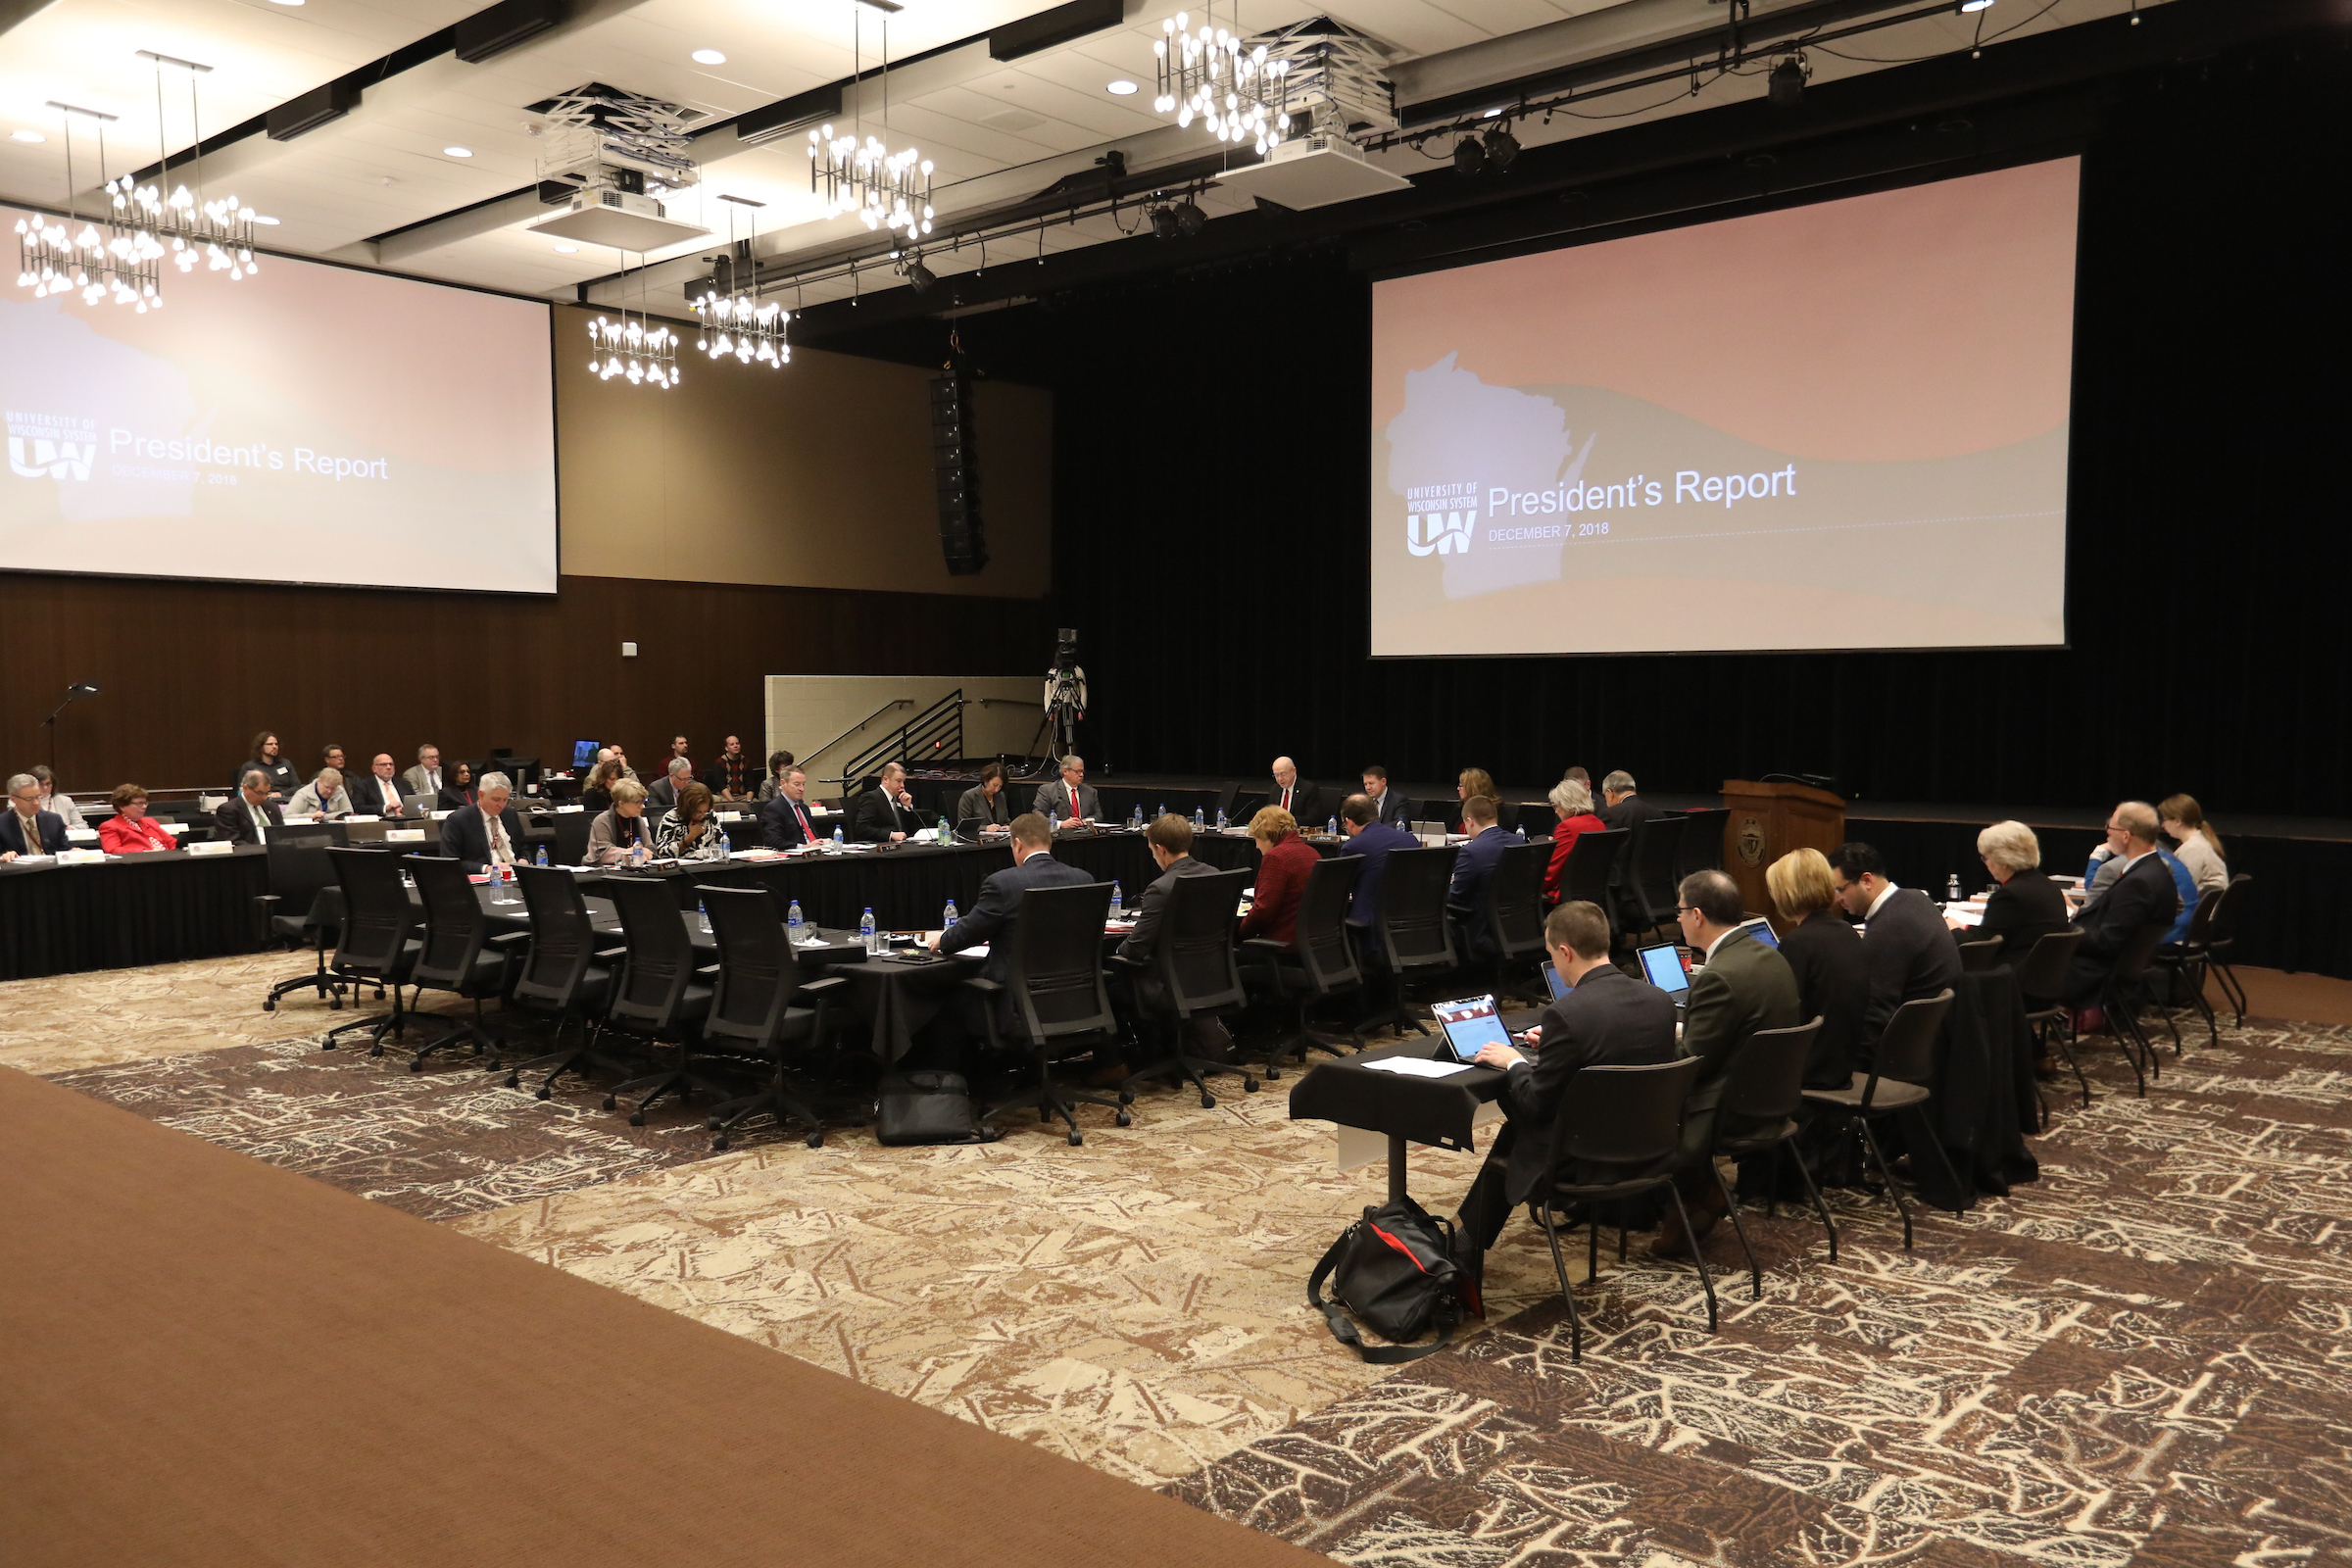 Photo of Board of Regents meeting held December 7, 2018, at UW-La Crosse